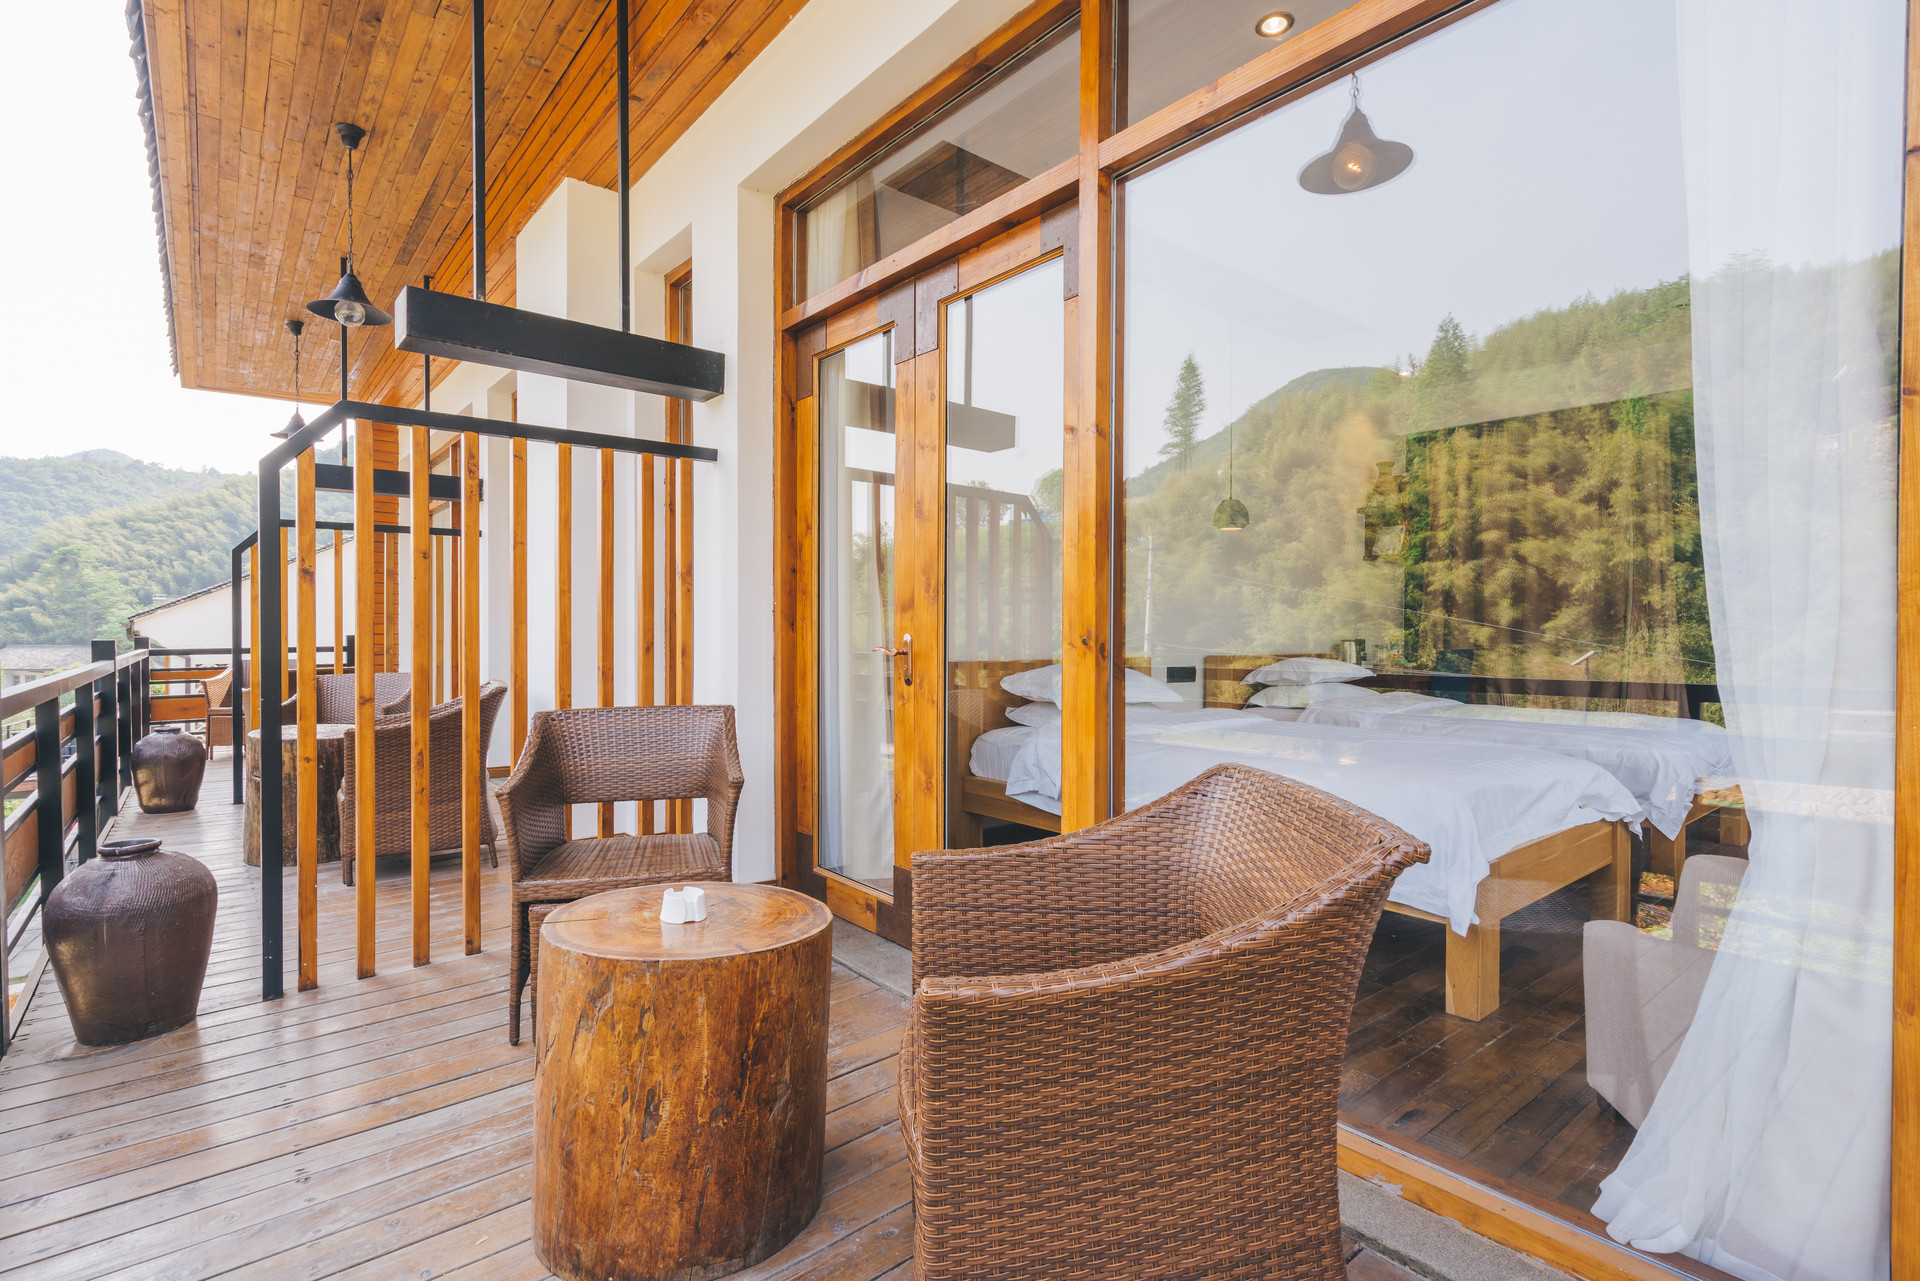 万豪推出 Homes & Villas 进军短租市场 要做高端版的 Airbnb